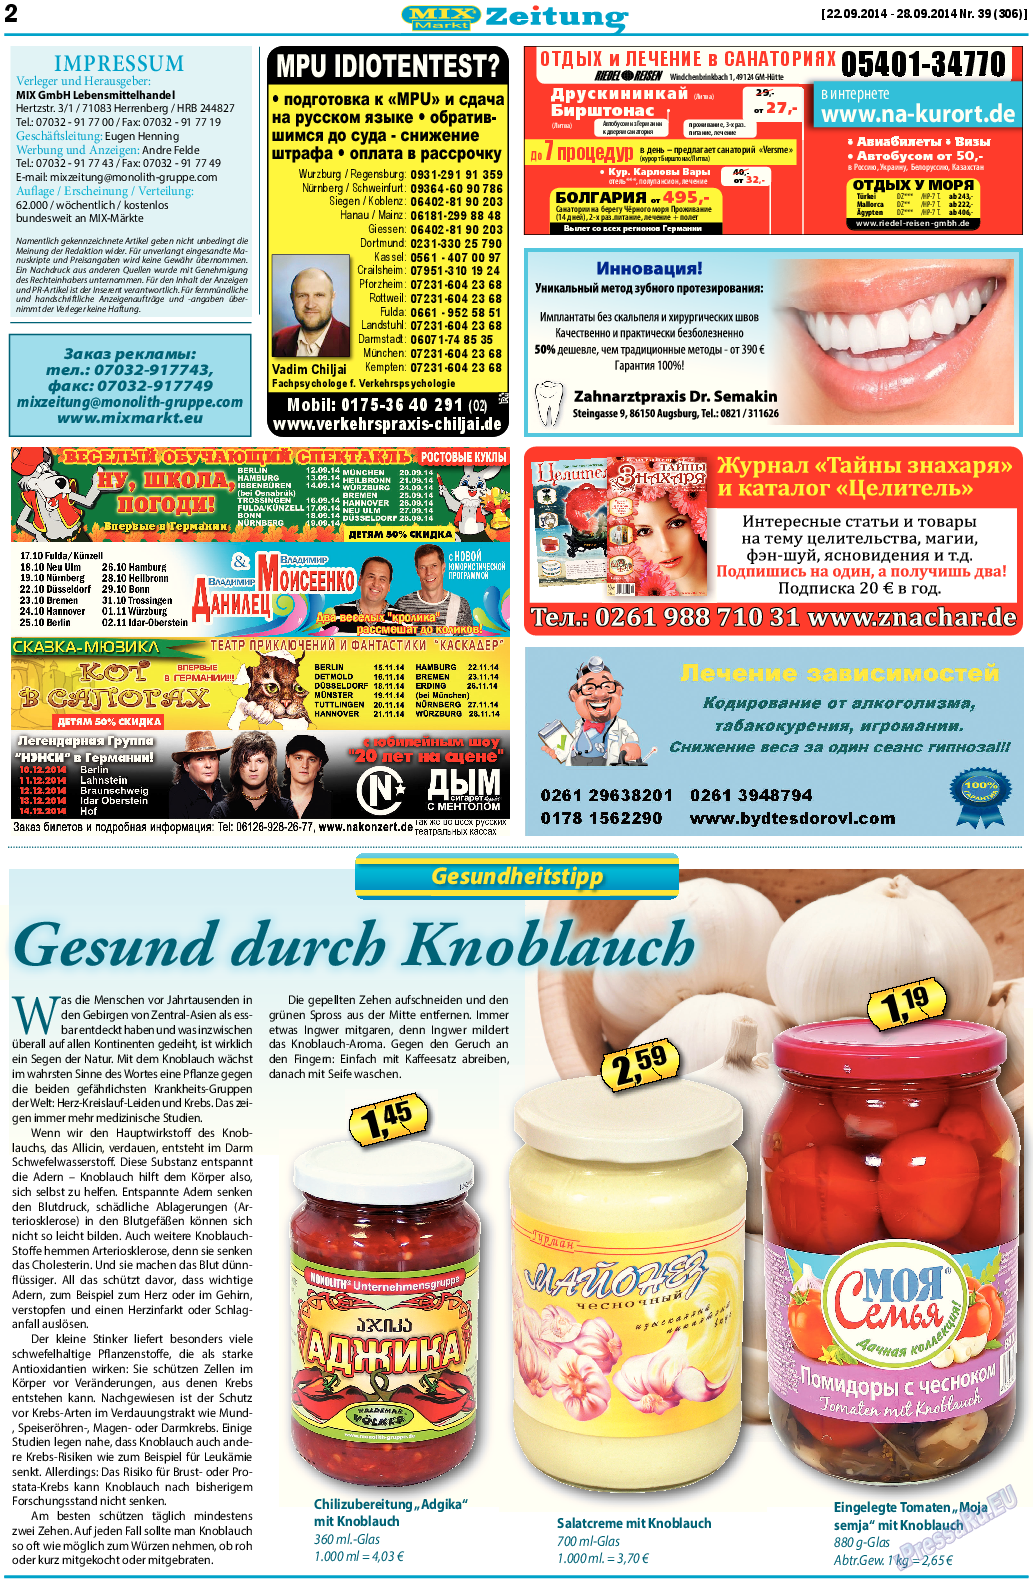 MIX-Markt Zeitung, газета. 2014 №39 стр.2